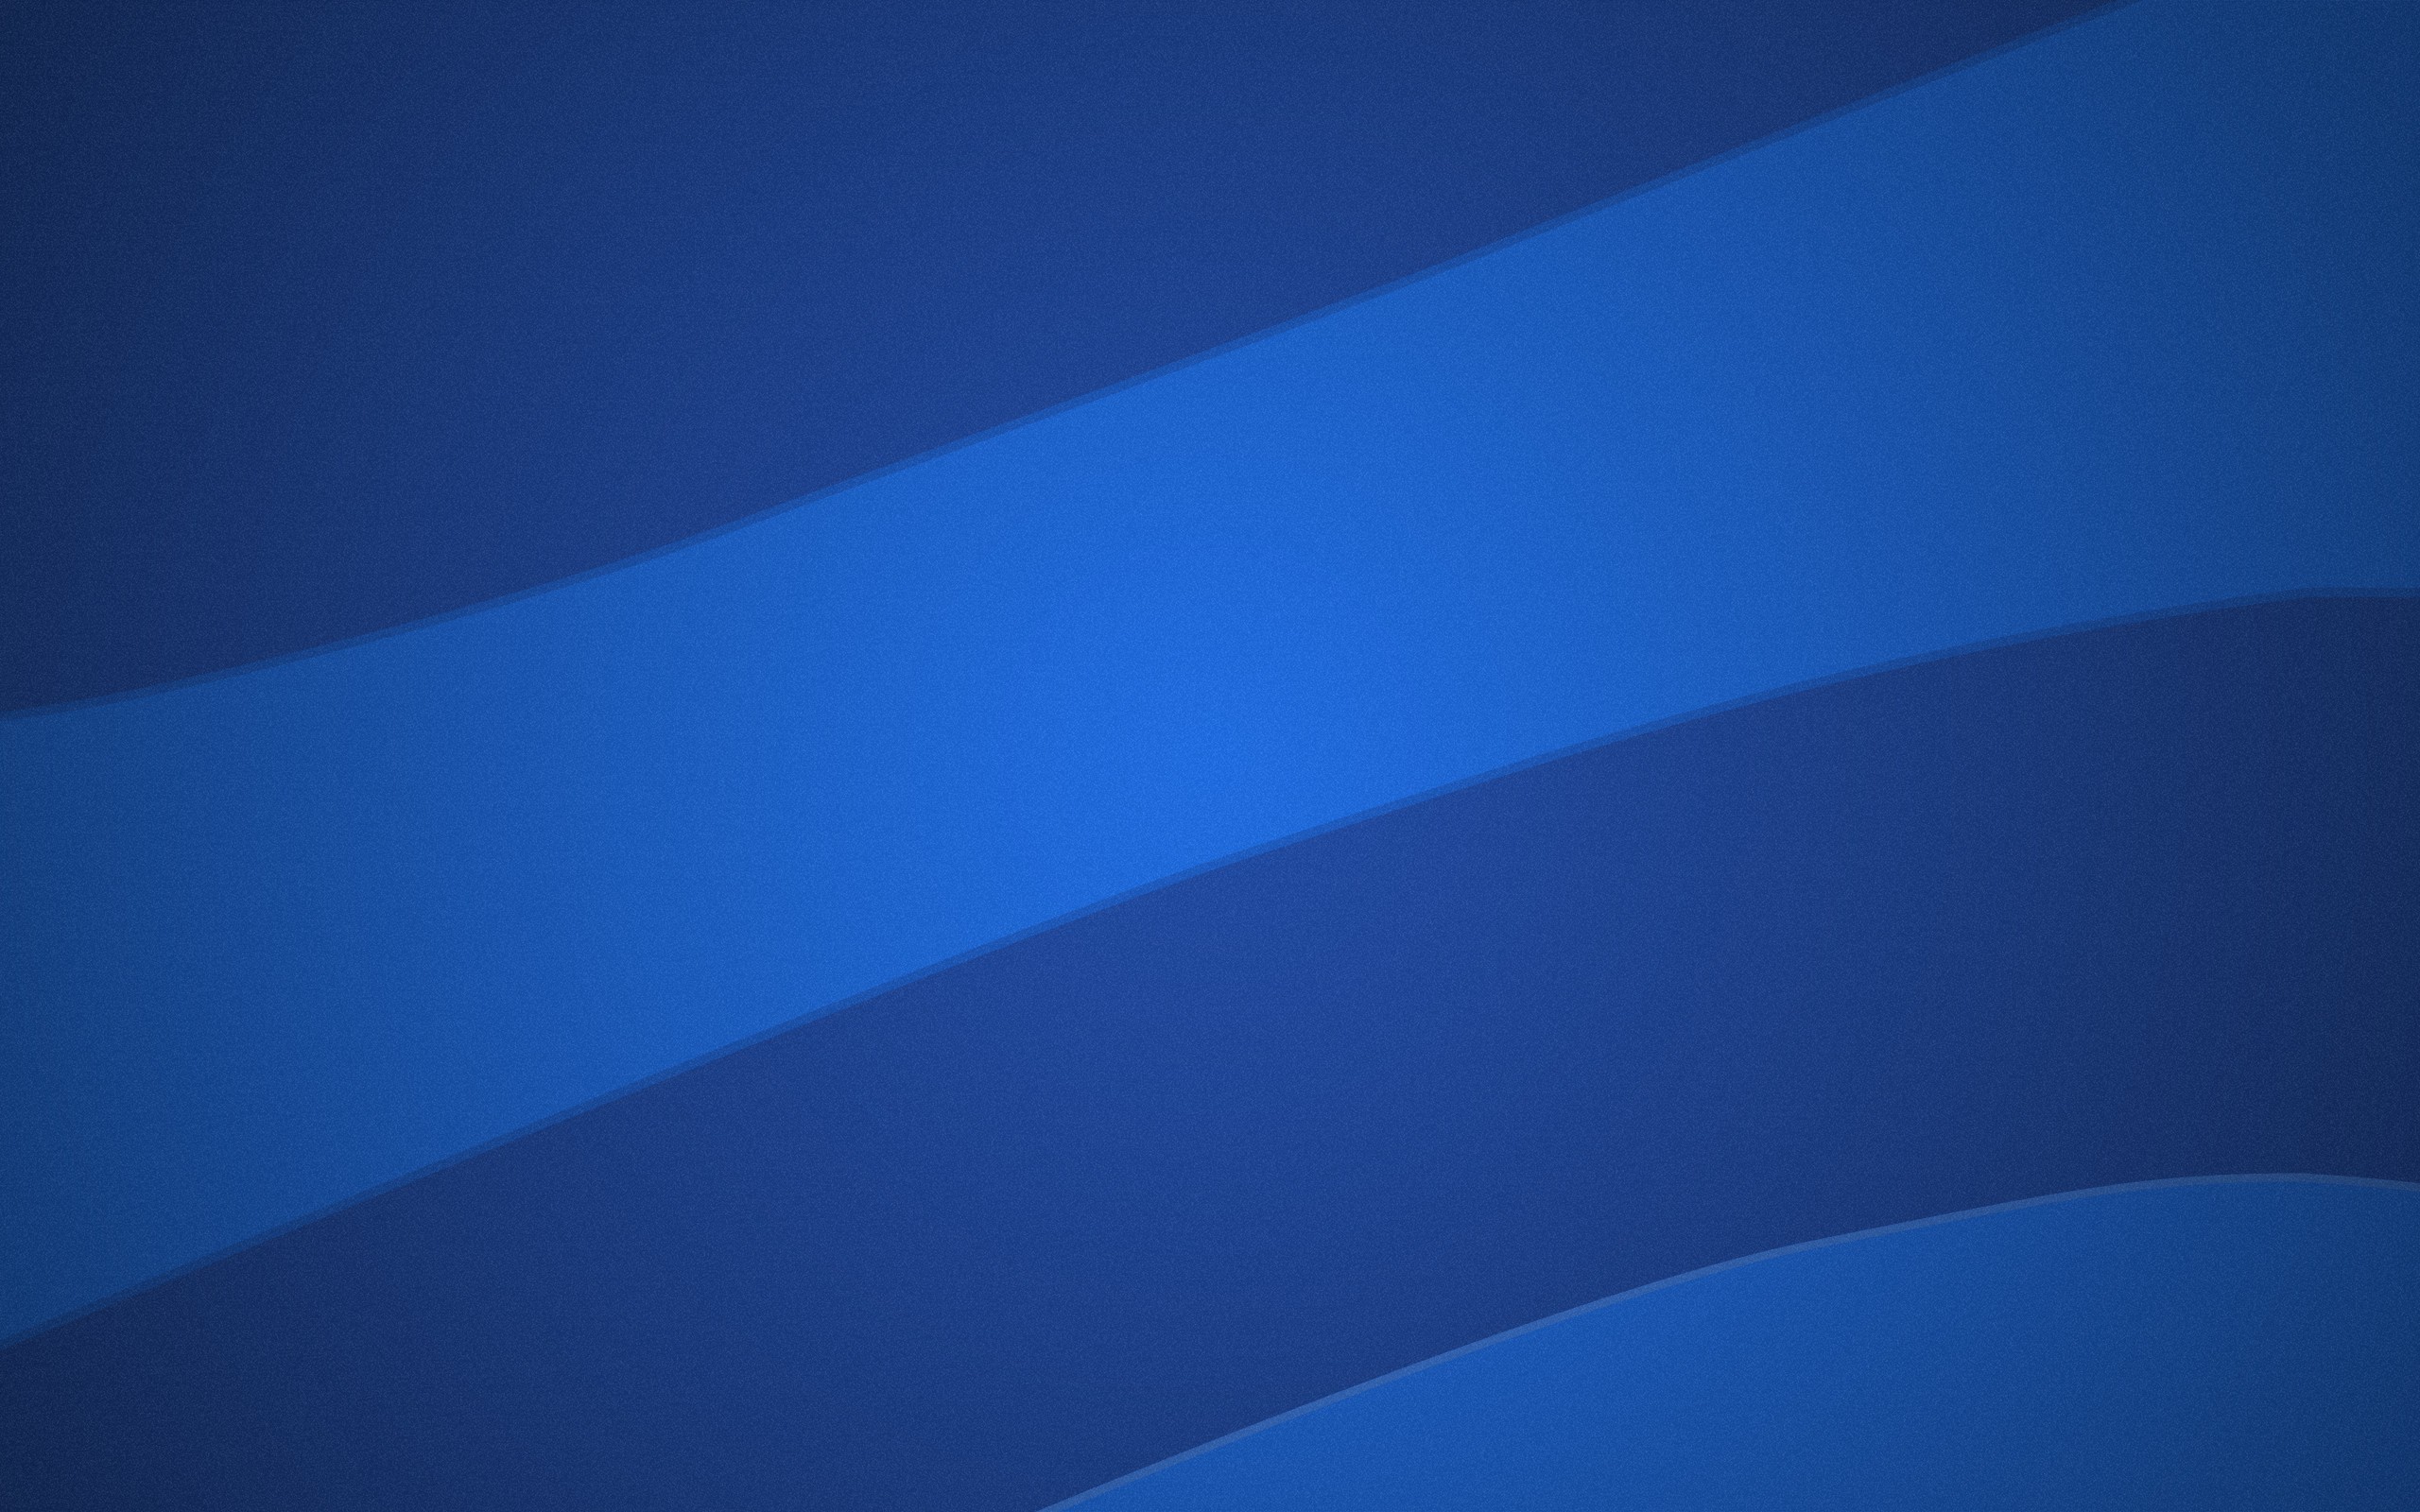 General 2560x1600 minimalism abstract stripes blue digital art